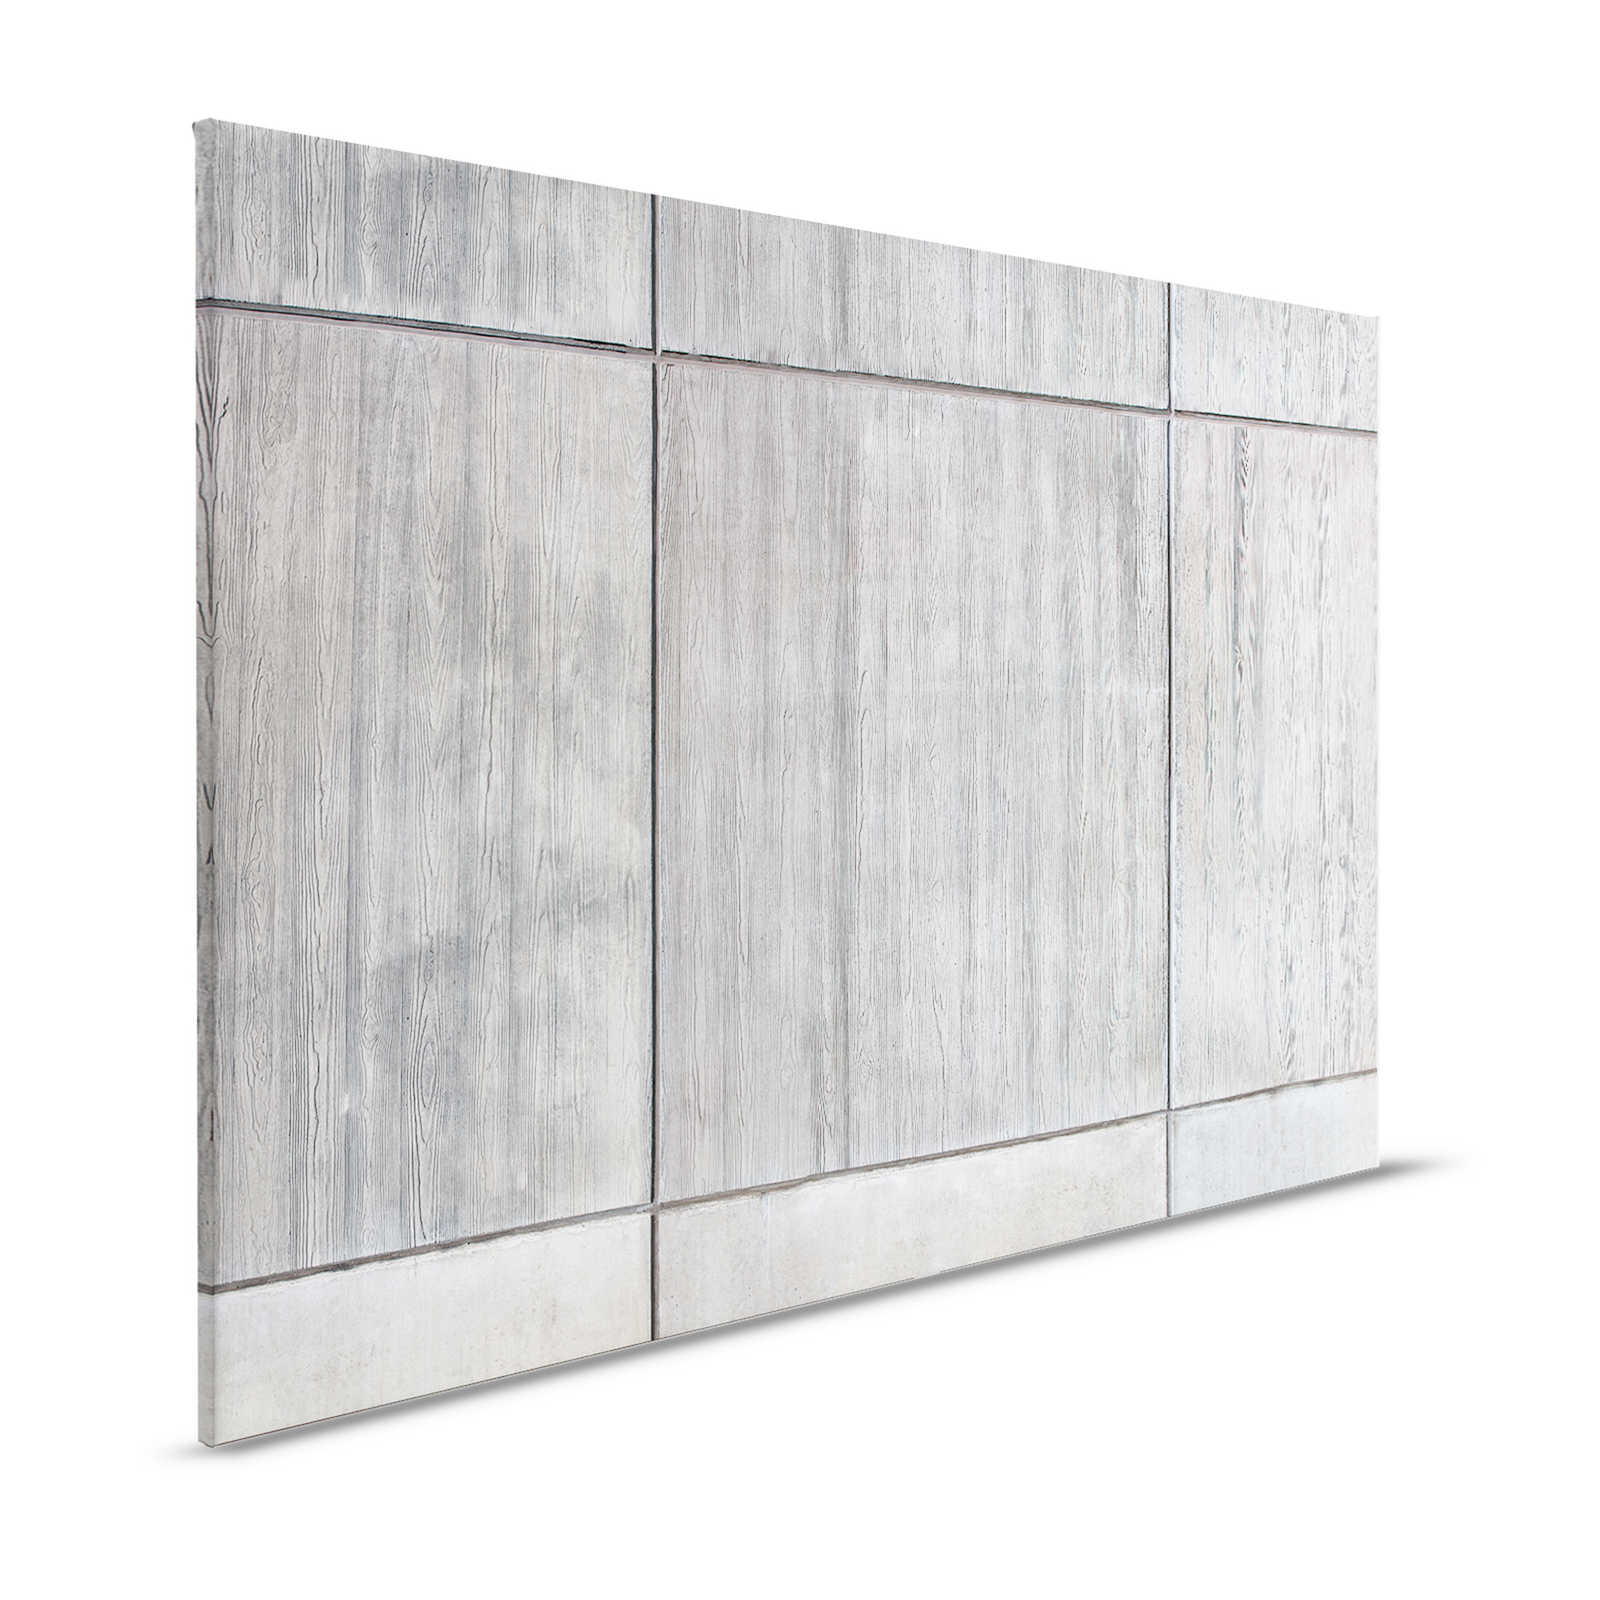 Quadro su lastra di cemento con cassaforma in tavole e venature del legno - 1,20 m x 0,80 m
